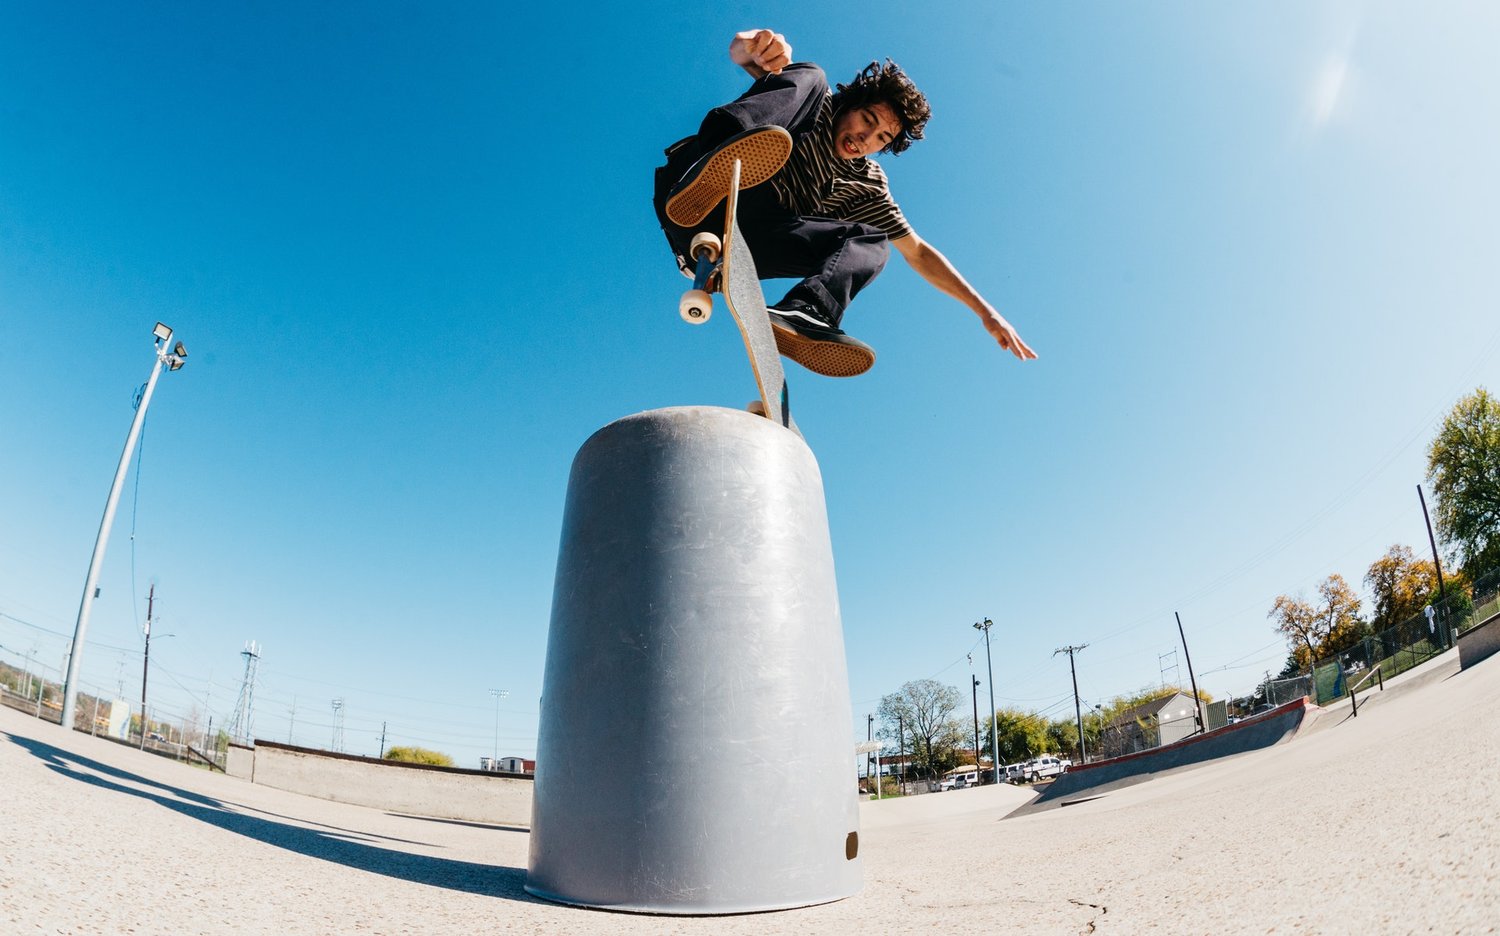 Foto: Jugendlicher mit Skateboard im Sprung an einem künstlichen Hindernis.